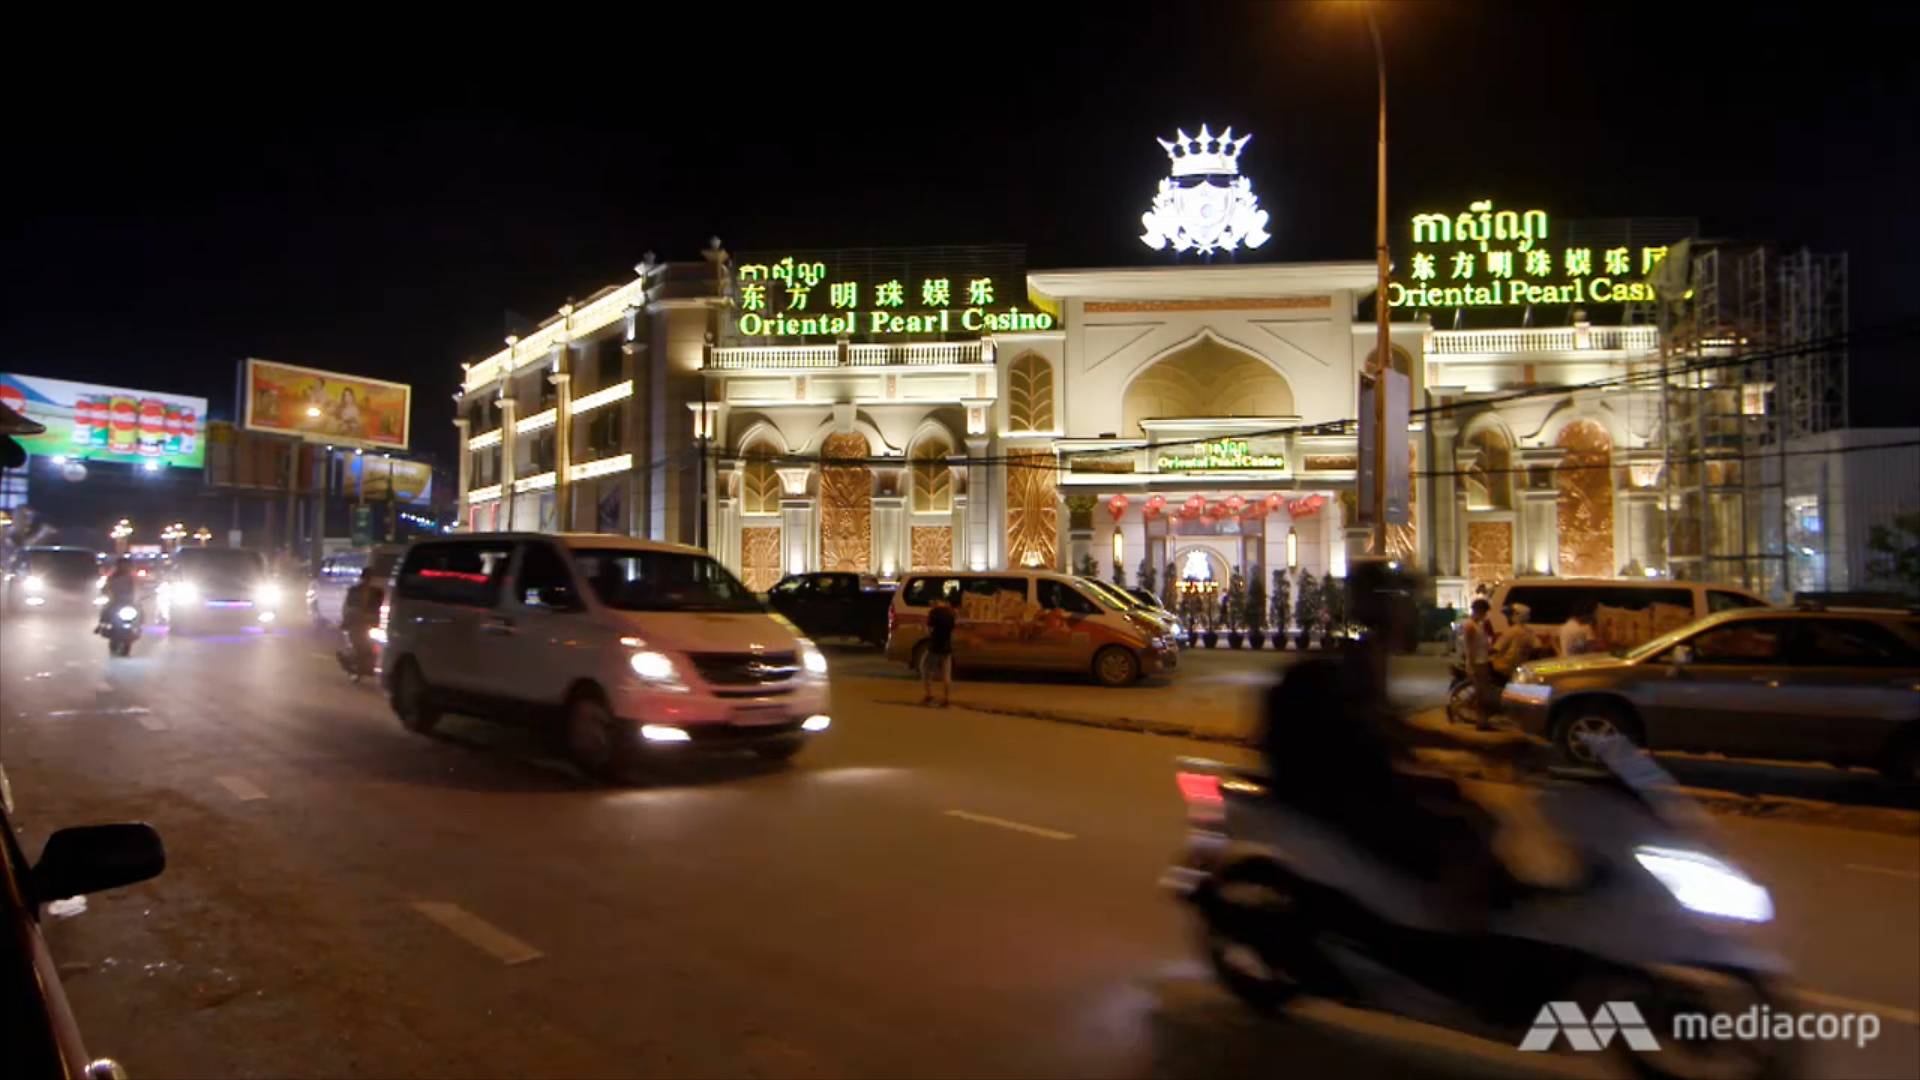 Oriental Pearl Casino in Cambodia